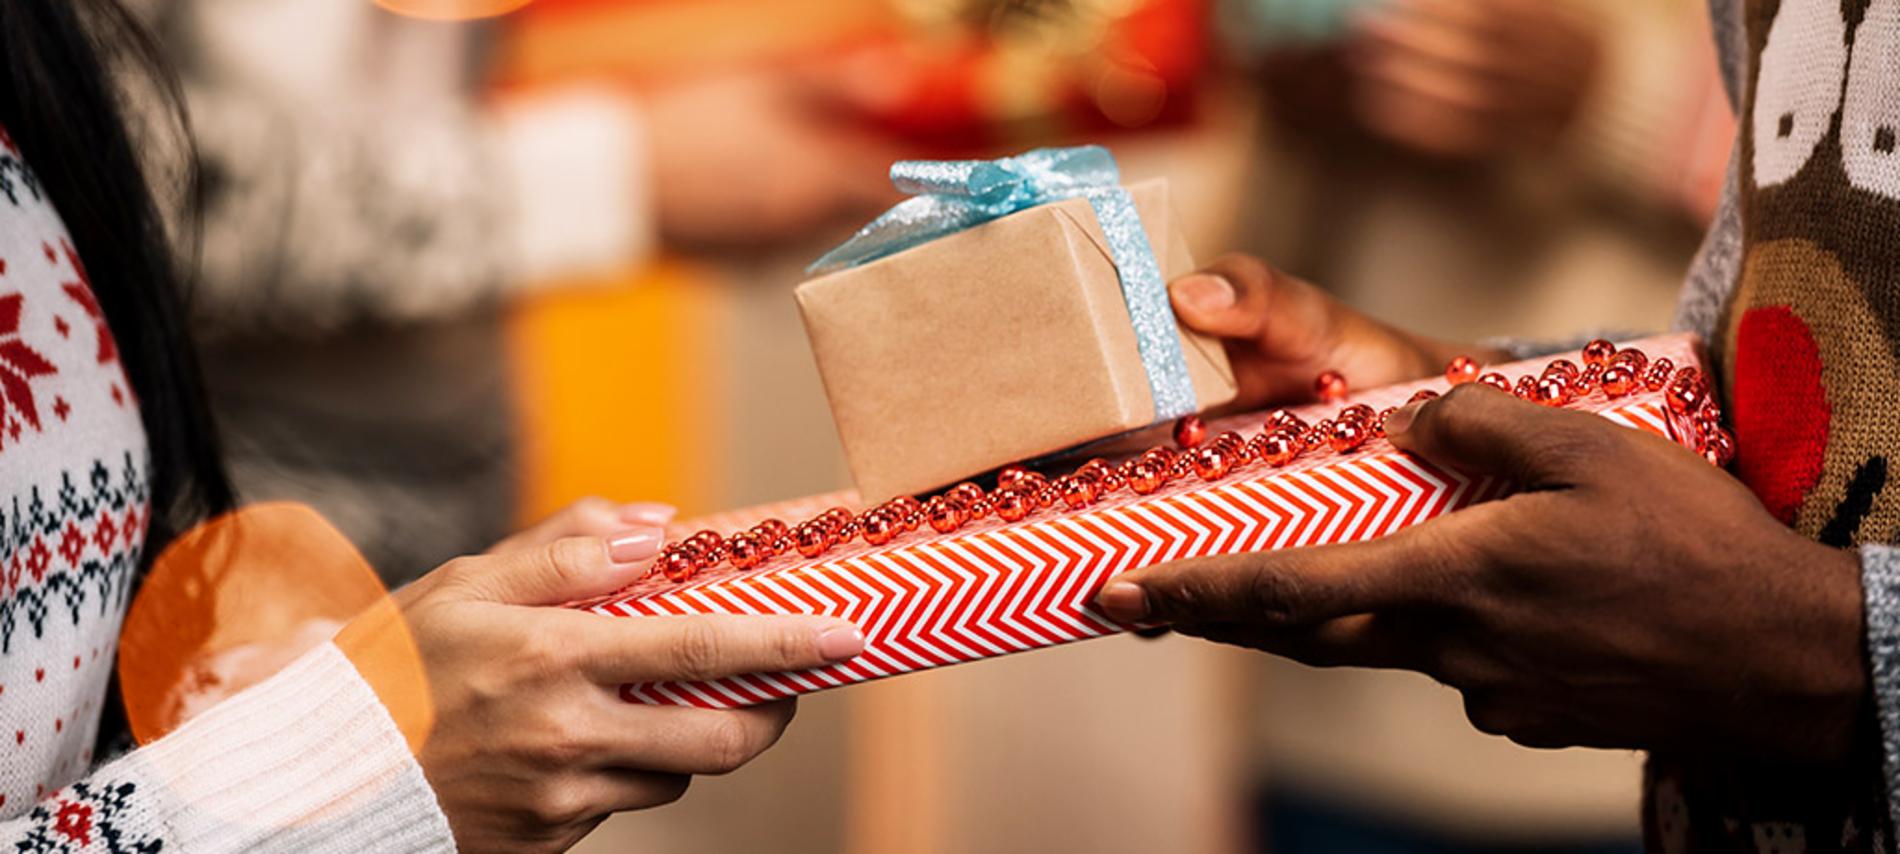 ¡Organiza un intercambio de regalos con tus amigos!